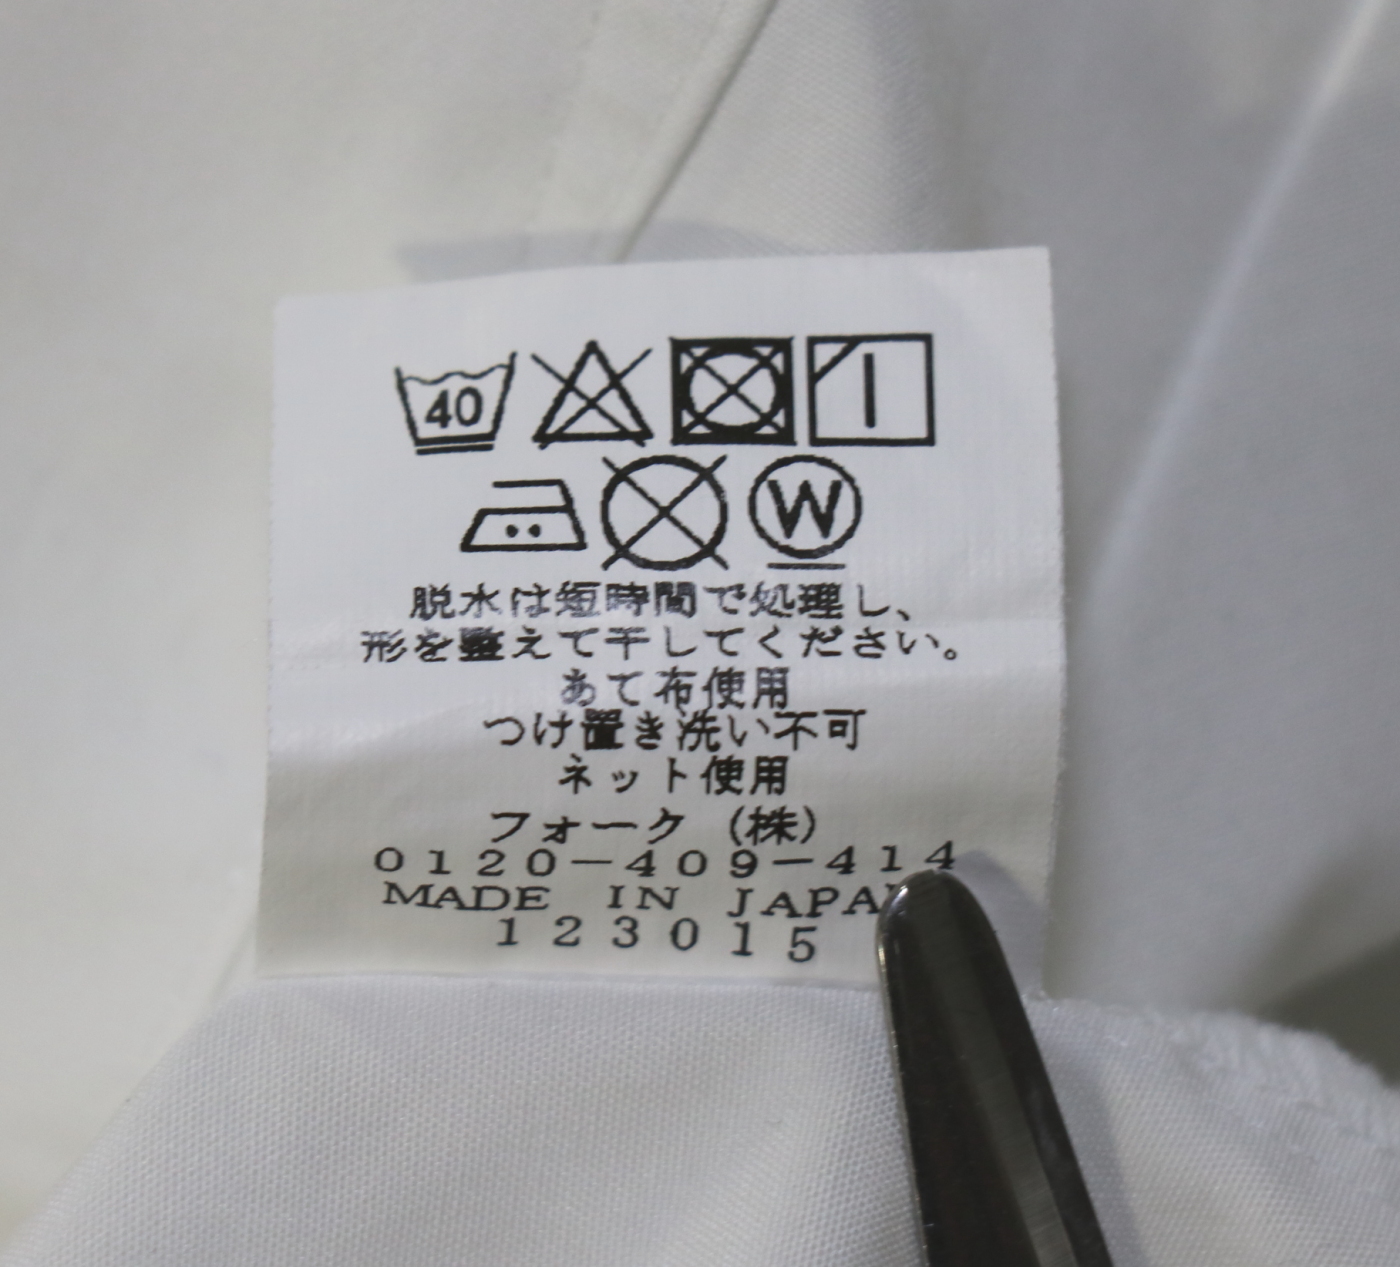 浦和学院高校の校章エンブレム付きの指定女子丸襟白色長袖ブラウスを買取致しました | 制服買取東京2020